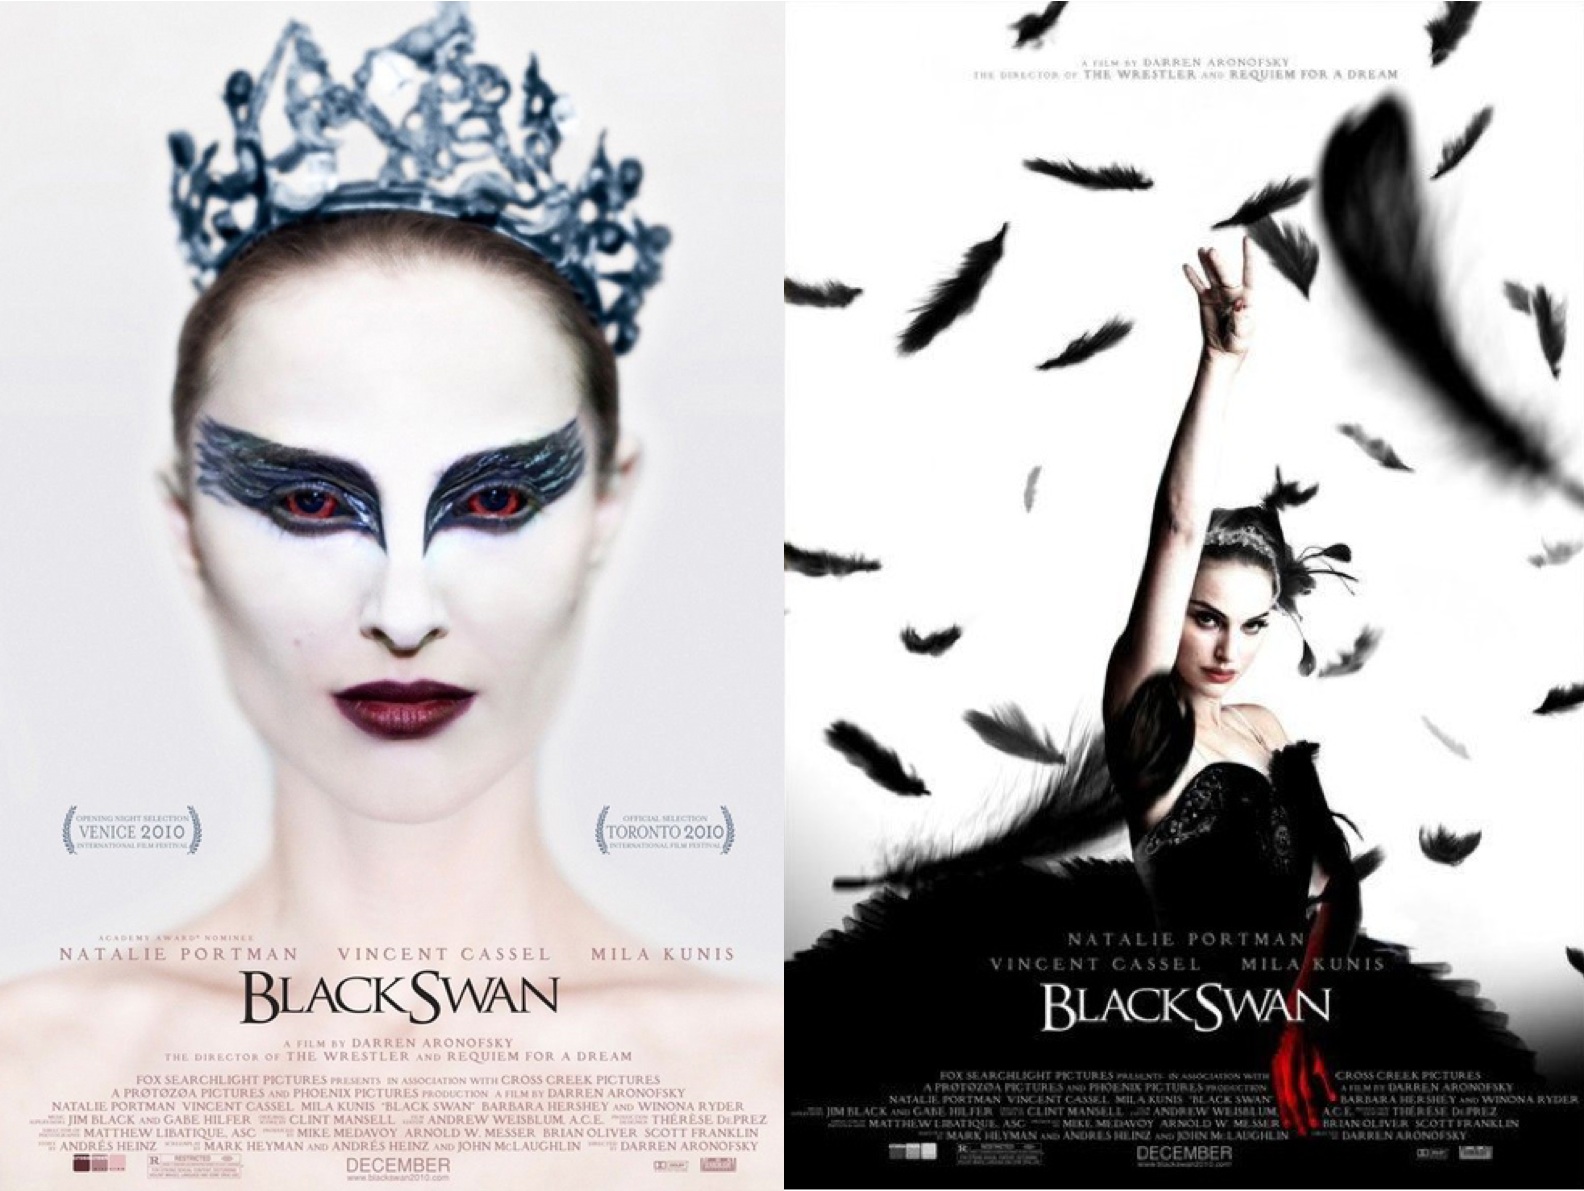 Black swan movie